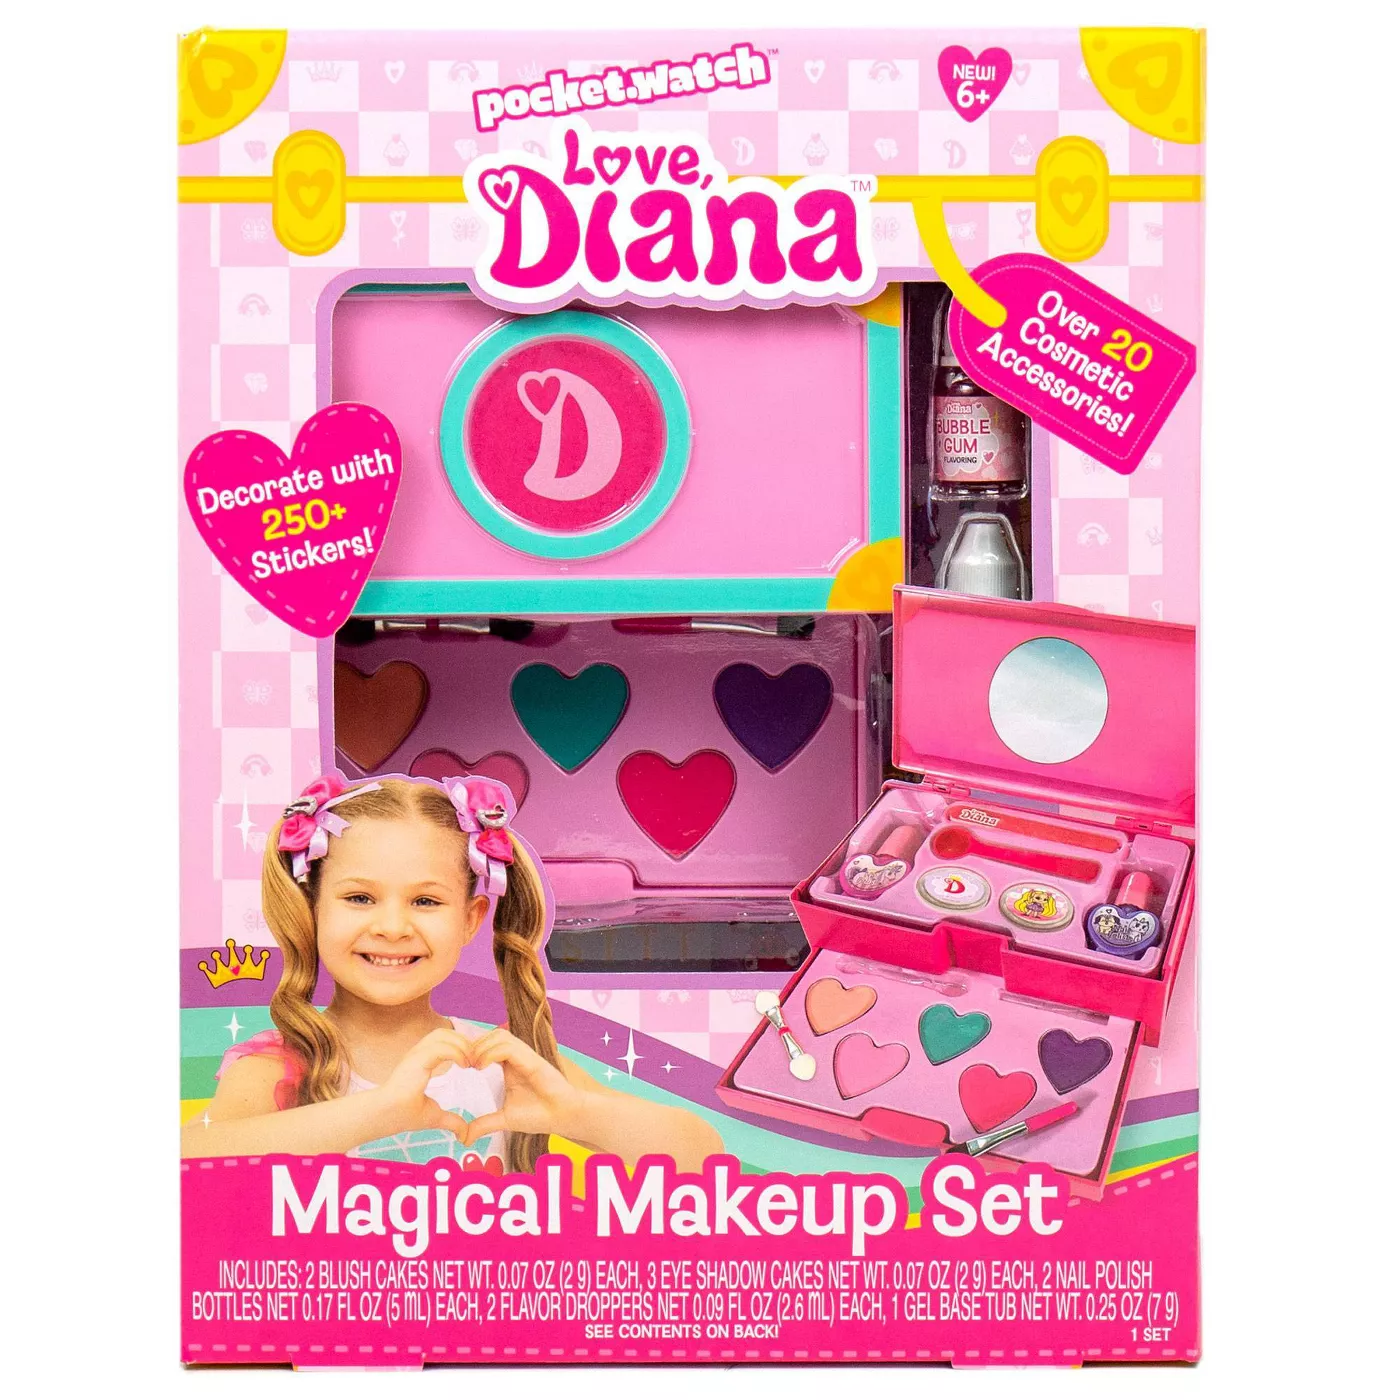 Love, Diana Magical Makeup Set - image 1 of 7